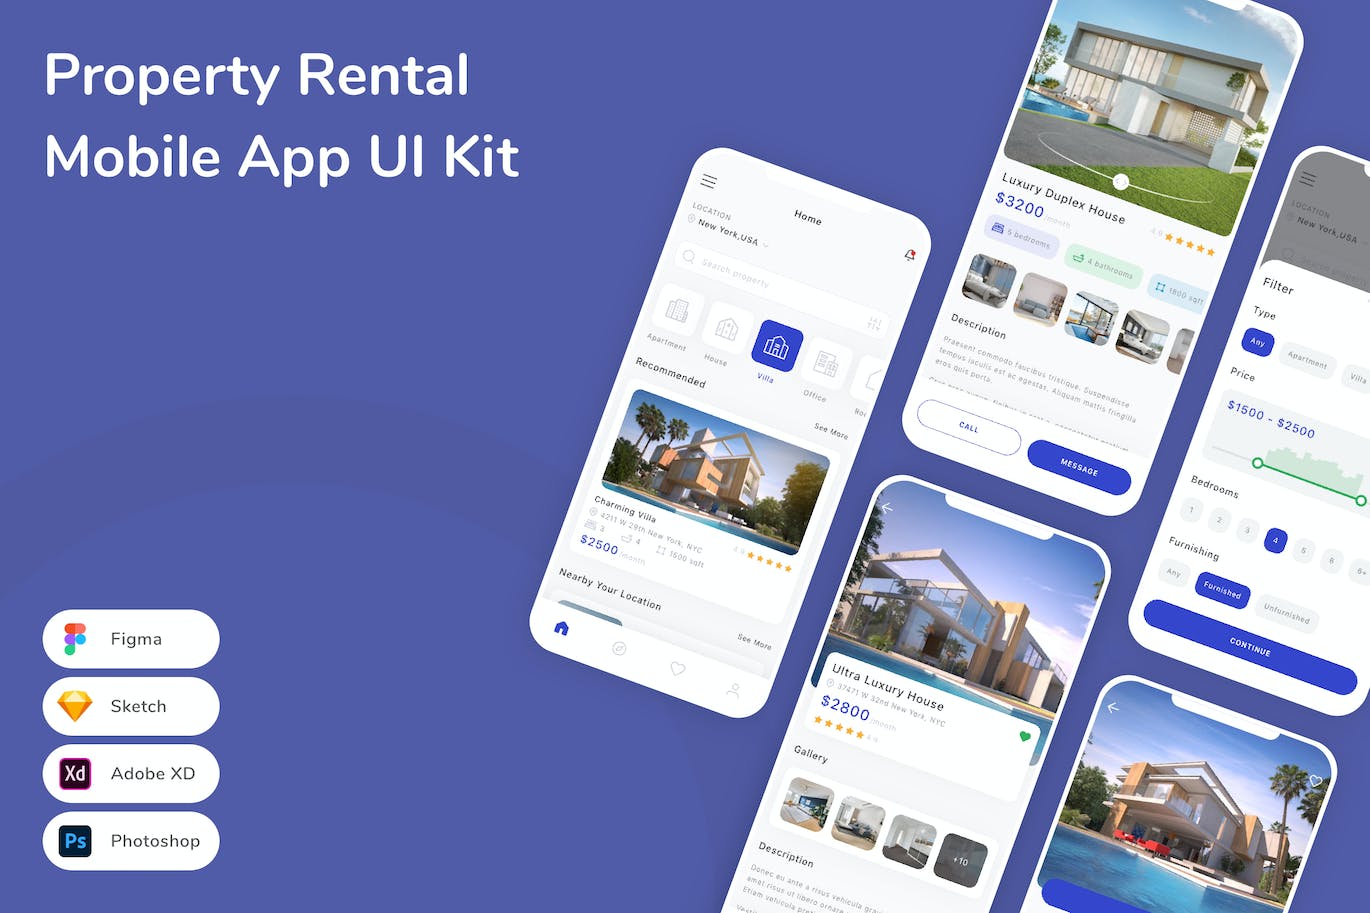 房产租赁App应用程序UI工具包素材 Property Rental Mobile App UI Kit APP UI 第1张